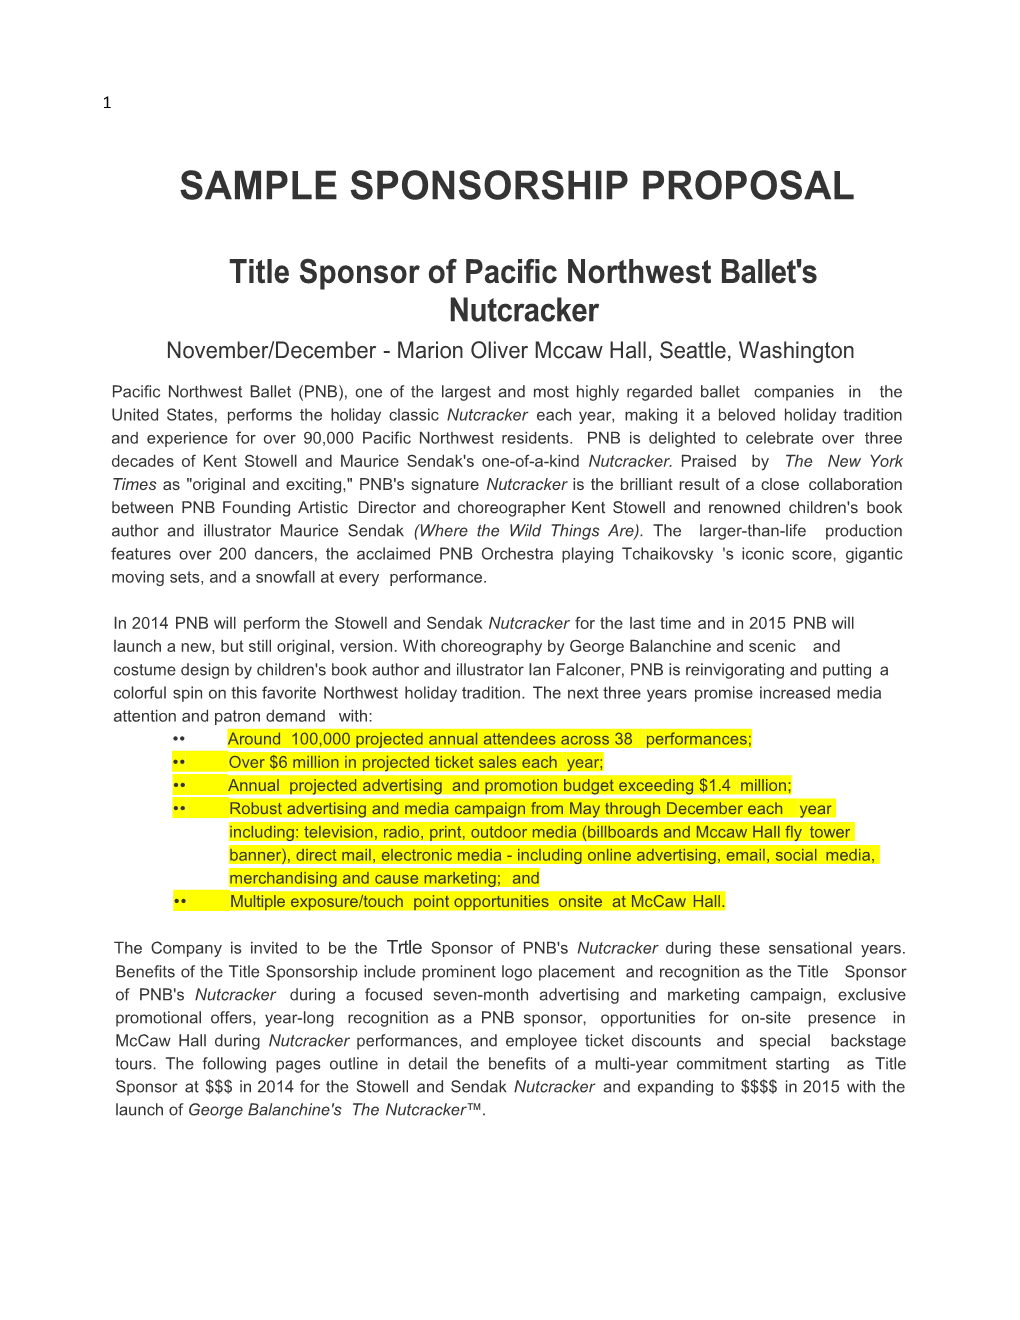 Sample Sponsorship Proposal